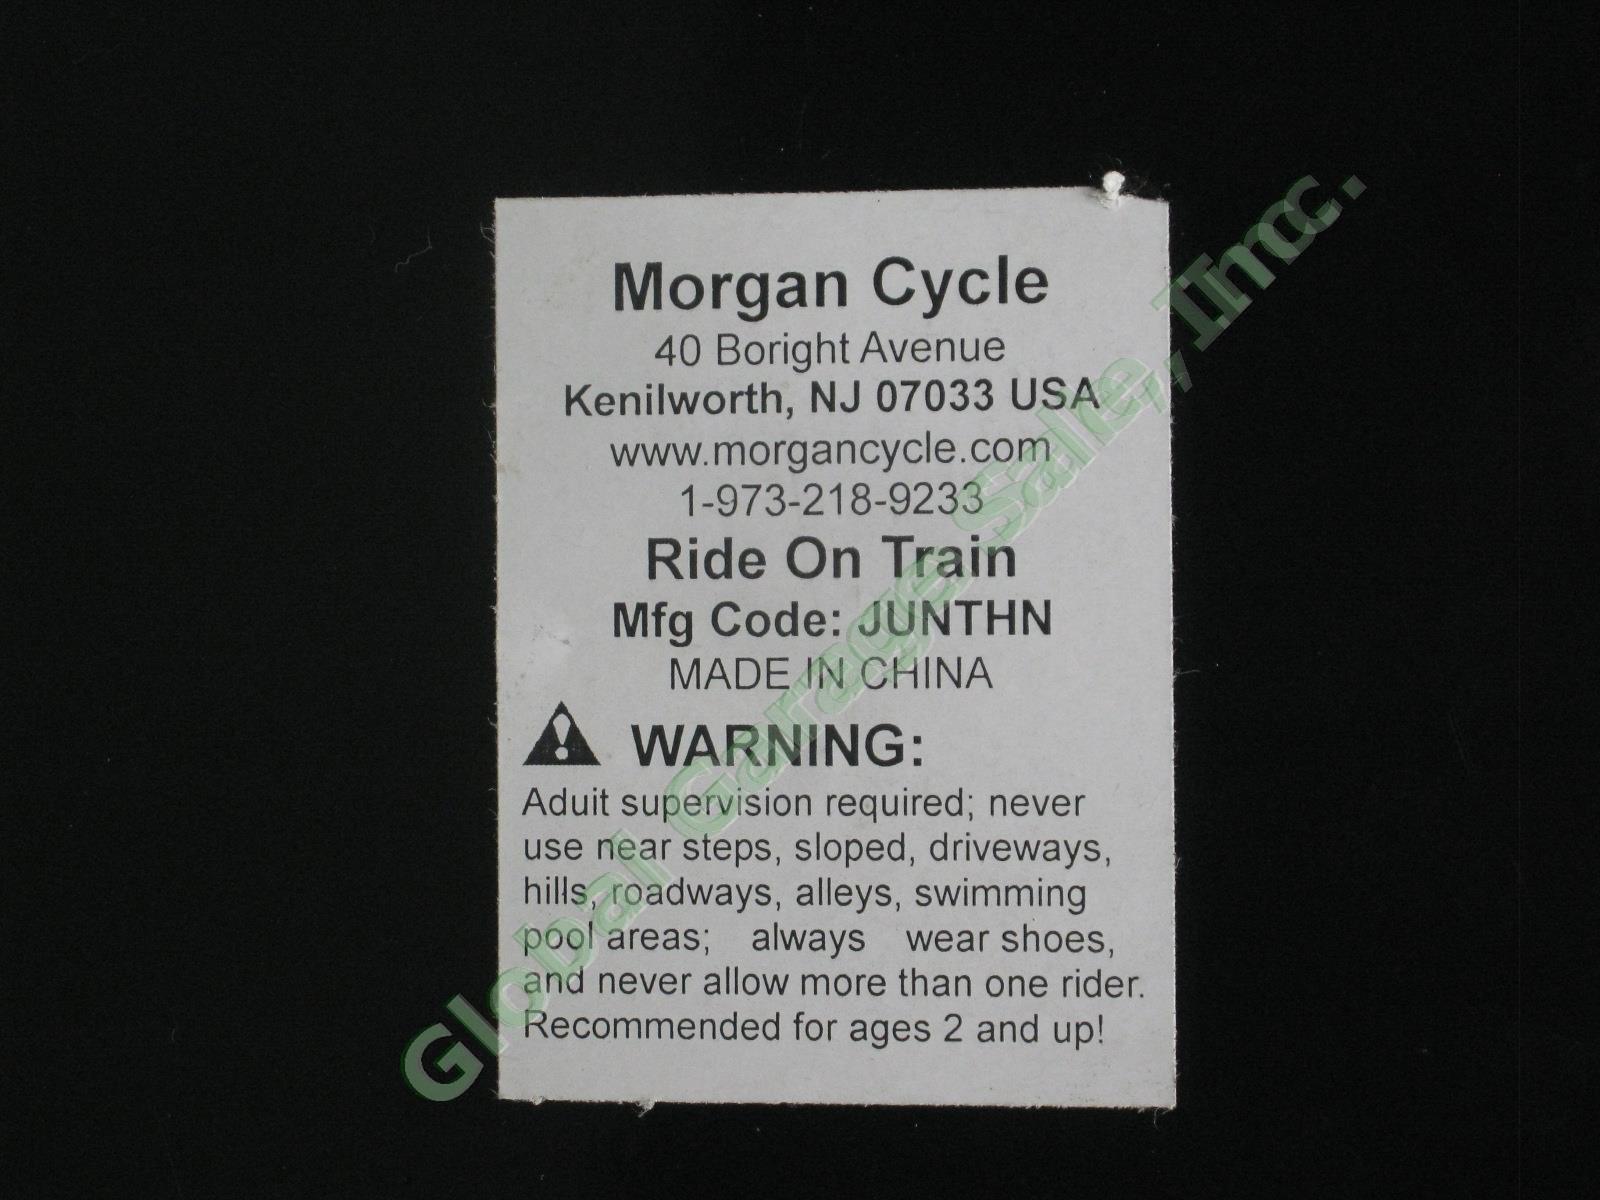 Morgan Cycle Santa Fe 268 Foot-To-Floor Ride-On Railroad Locomotive Engine Train 5